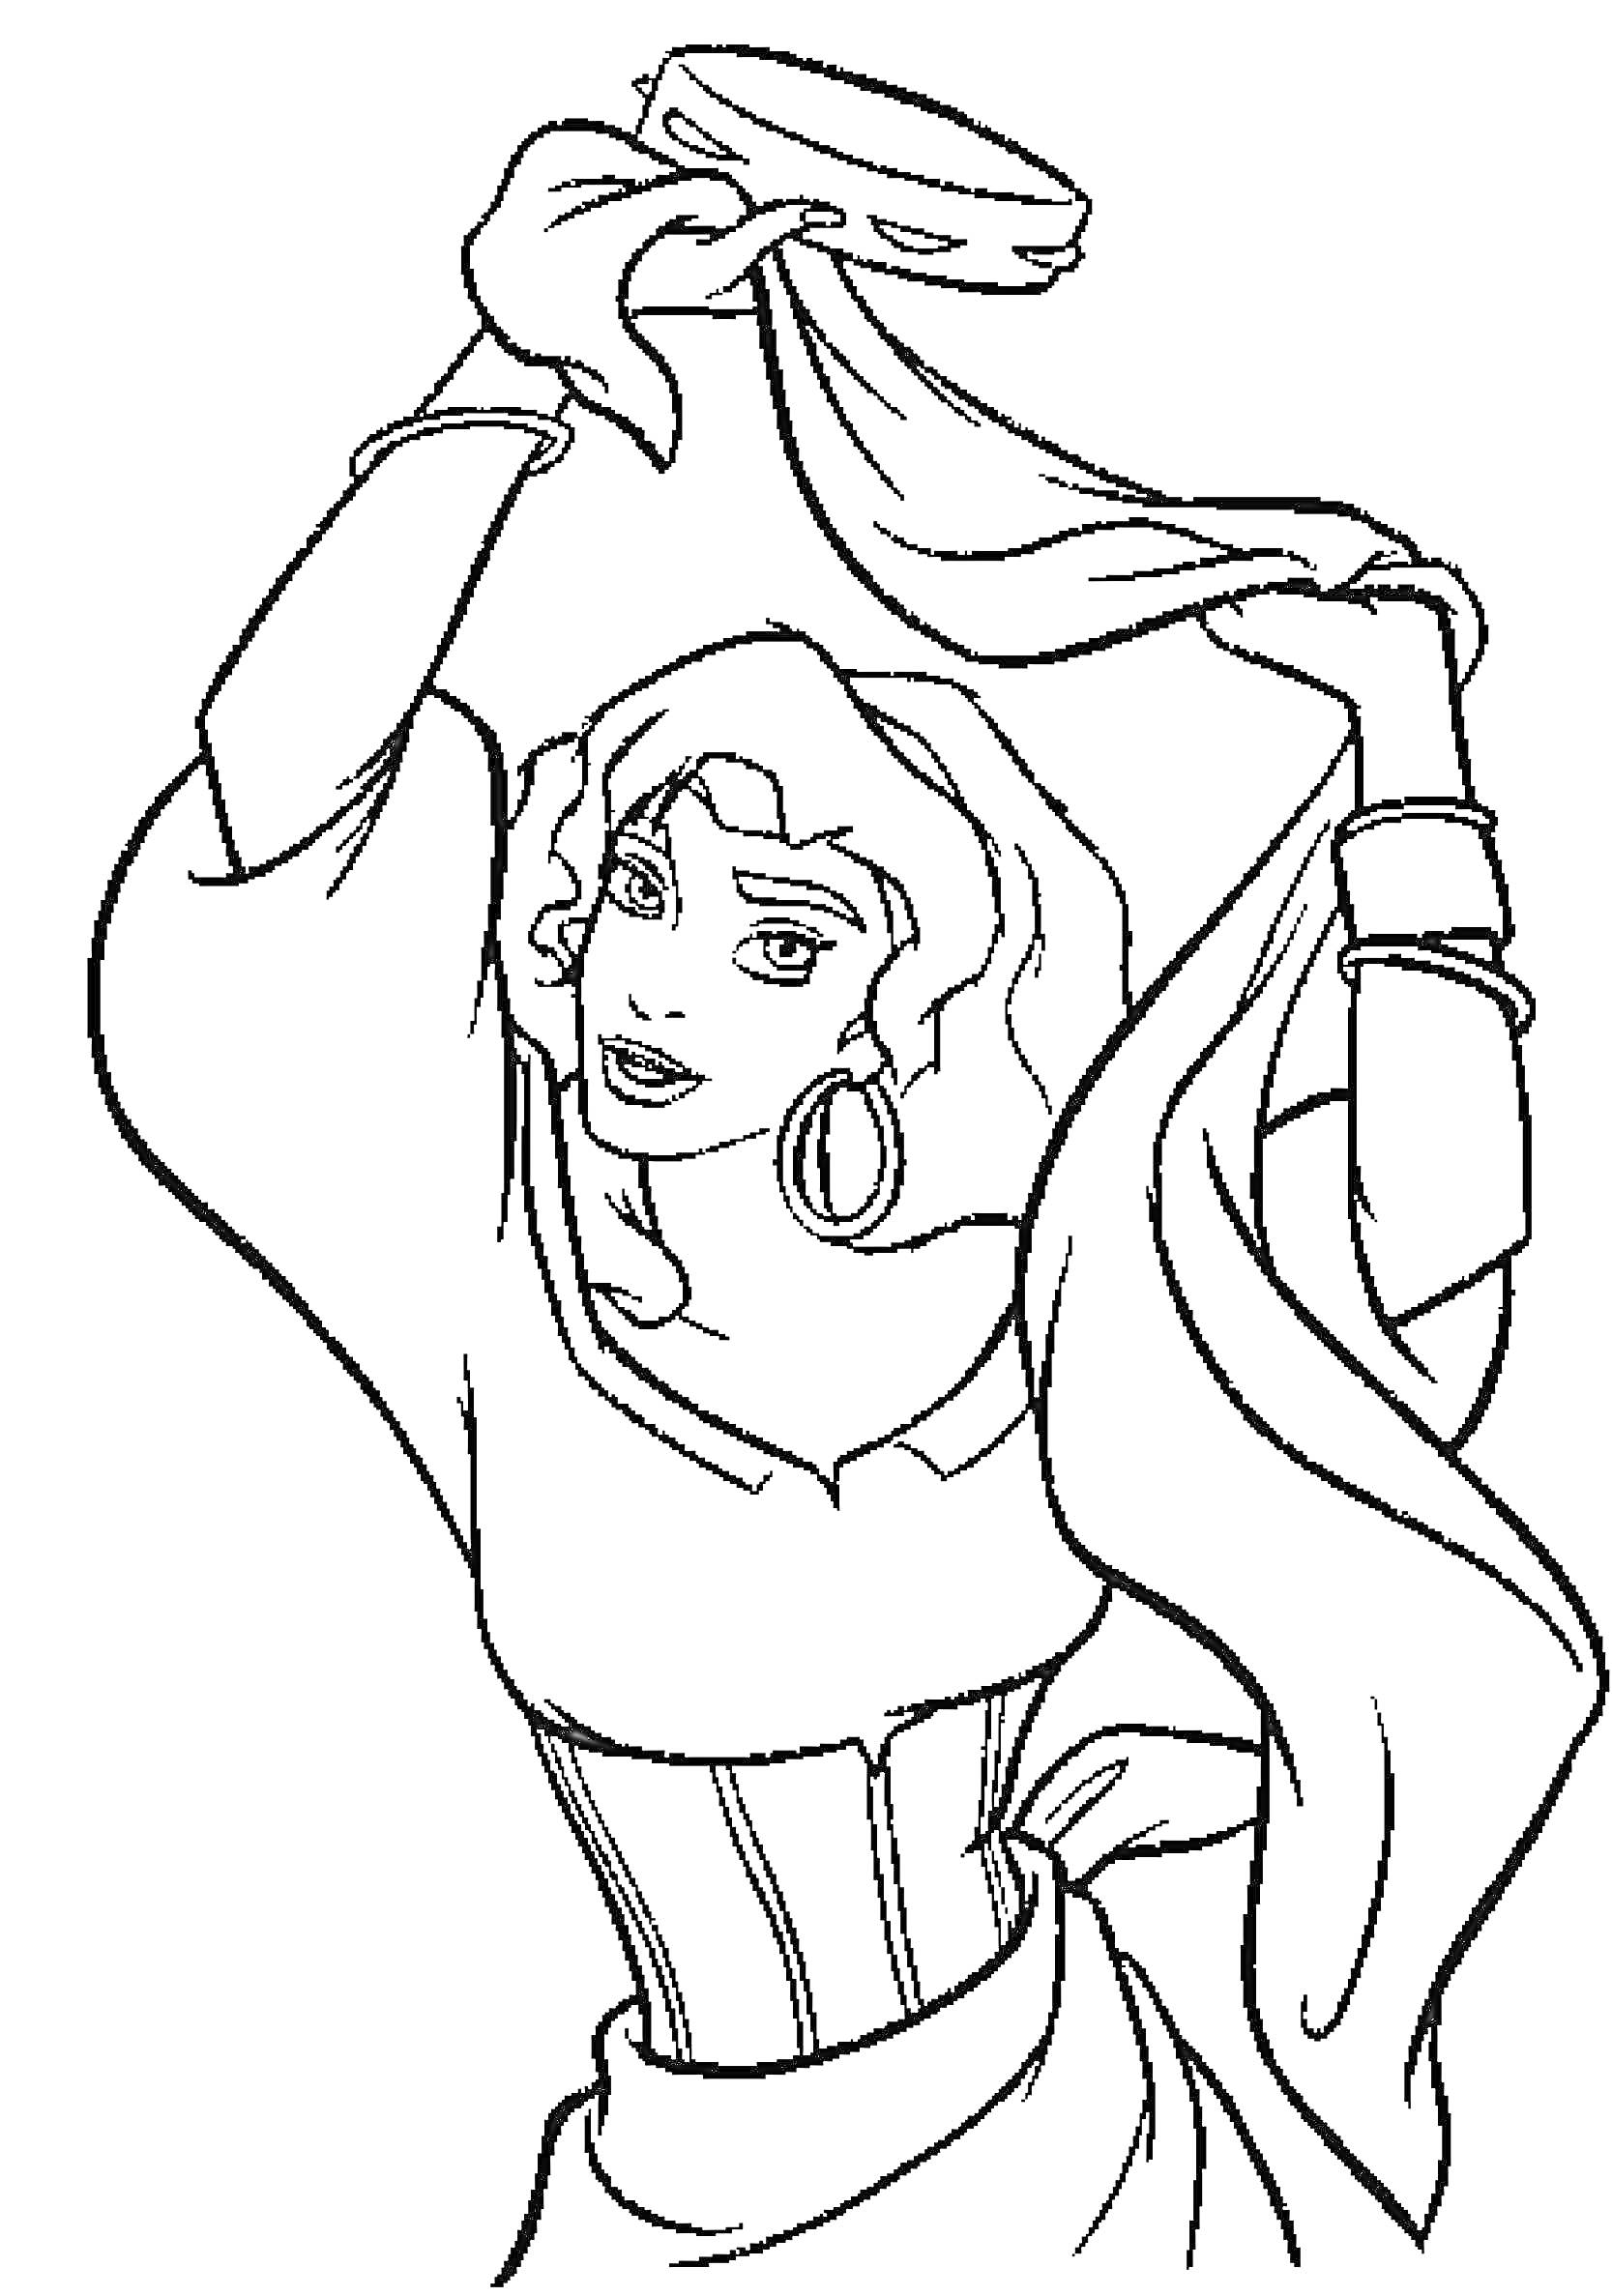 Раскраска Женщина с бубном и платком, в длинном платье и серьгой-кольцом в ухе